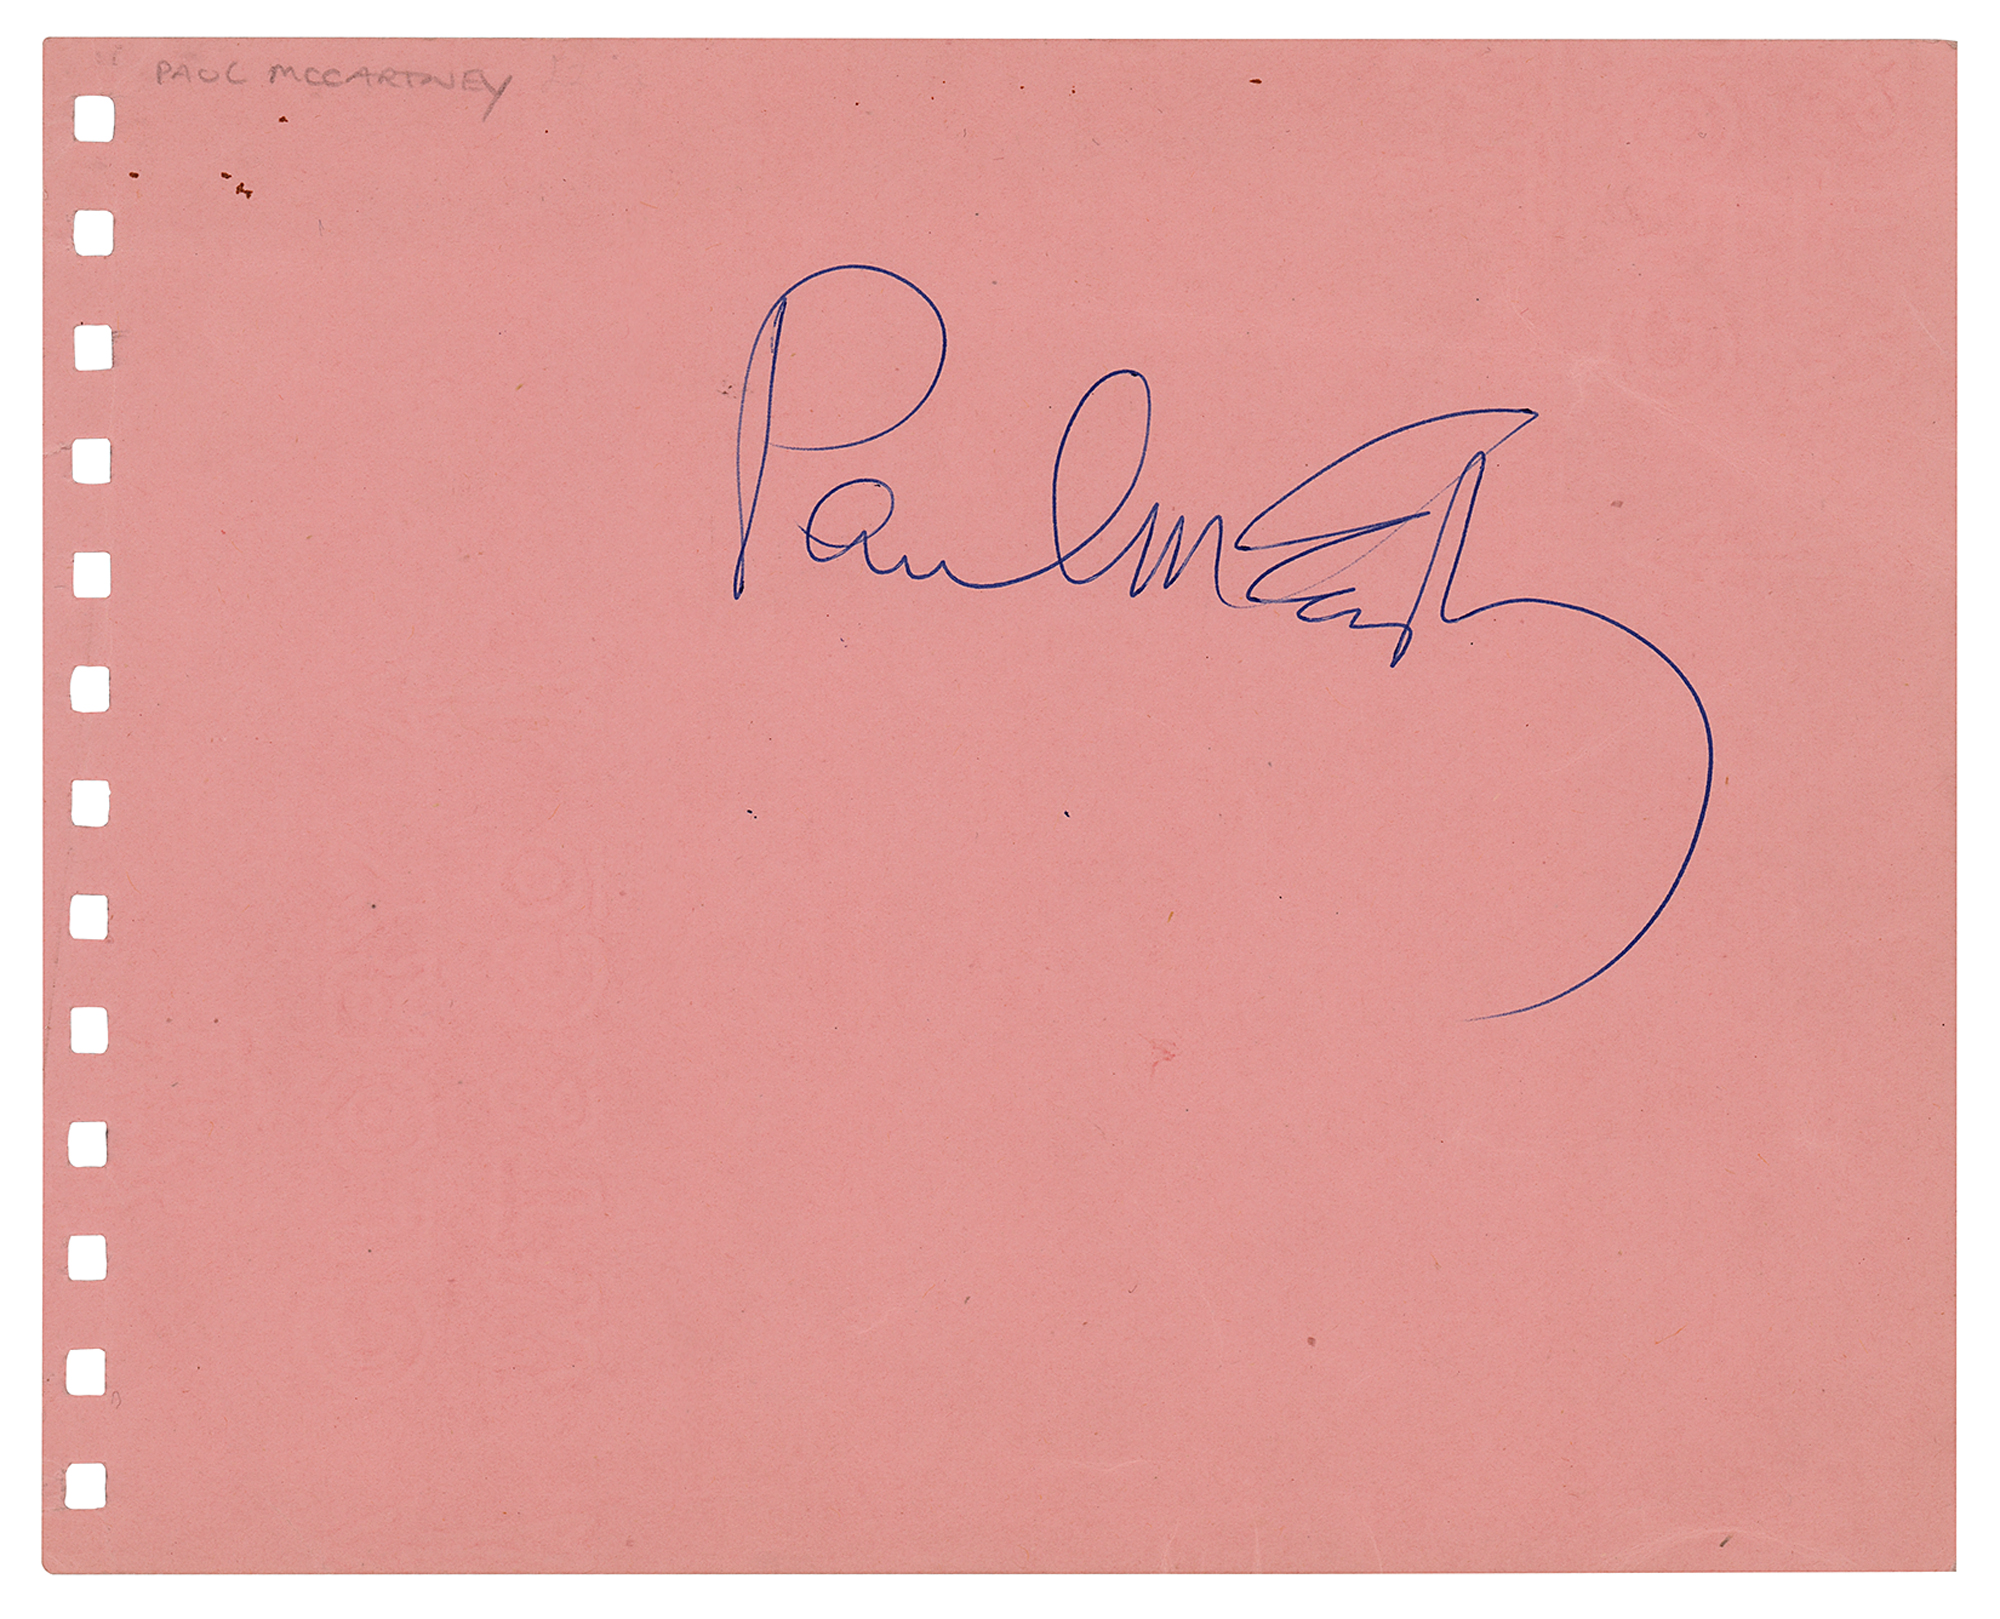 Lot #607 Beatles: Paul McCartney Signature